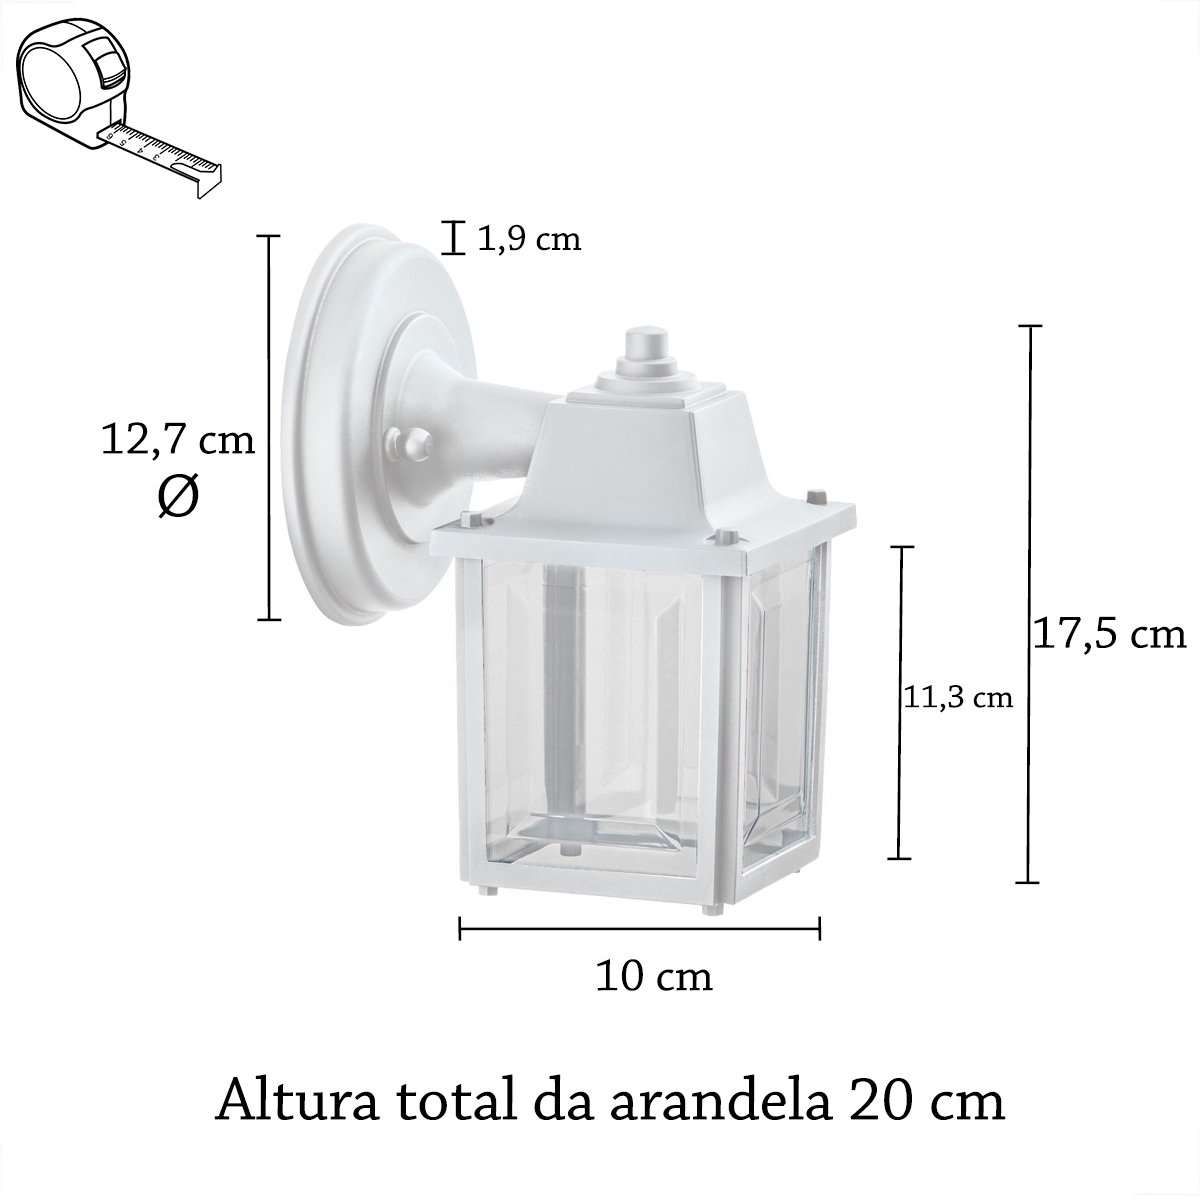 3 Un Luminária Arandela Externo Colonial Plastico Branco Alz19 - 5